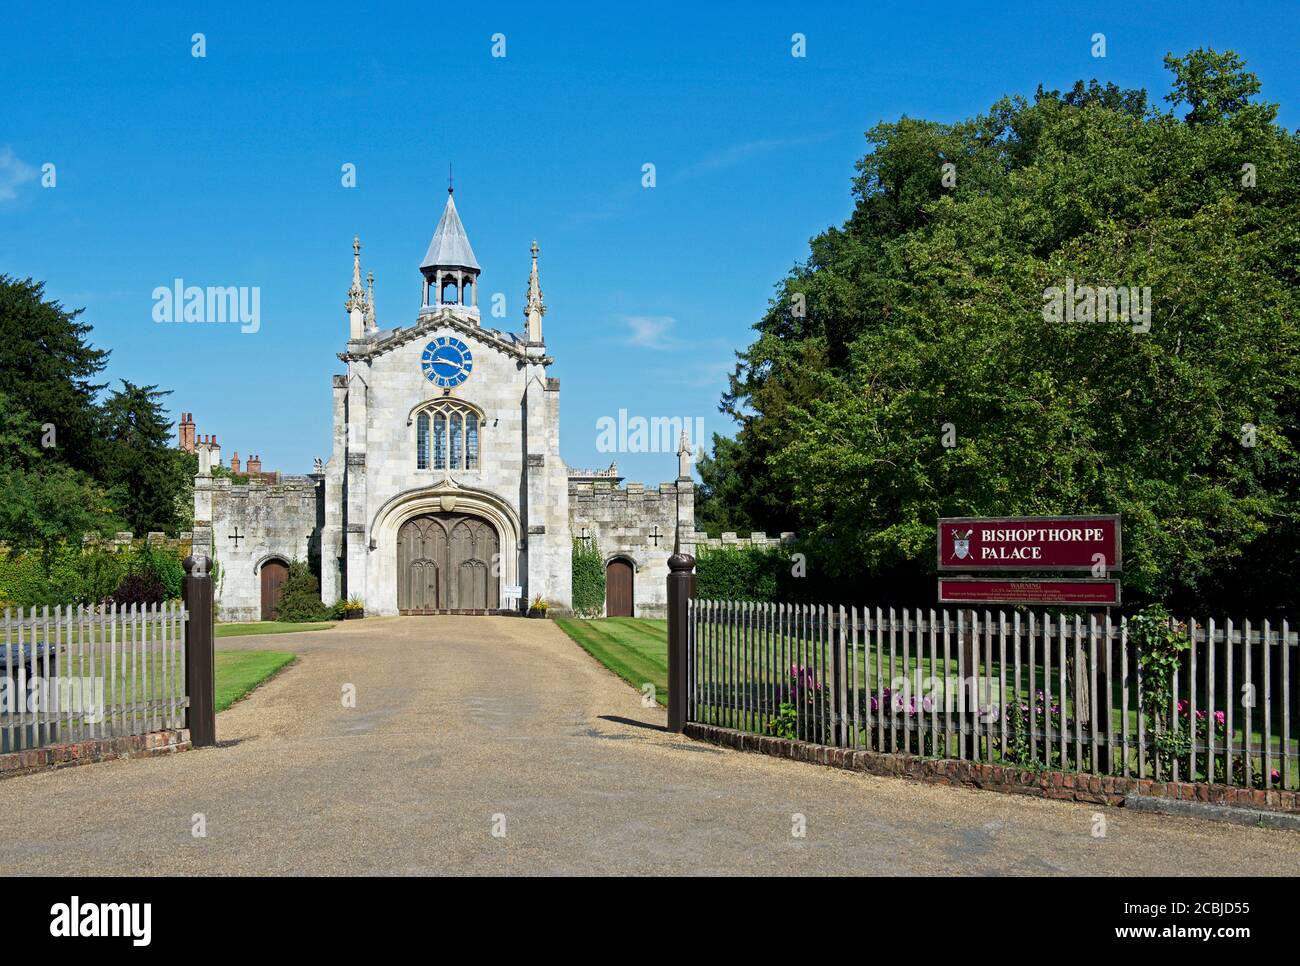 Das Torhaus von Bishopthorpe Palace, die Residenz des Erzbischofs von York, Bishopthorpe, North Yorkshire, England Großbritannien Stockfoto